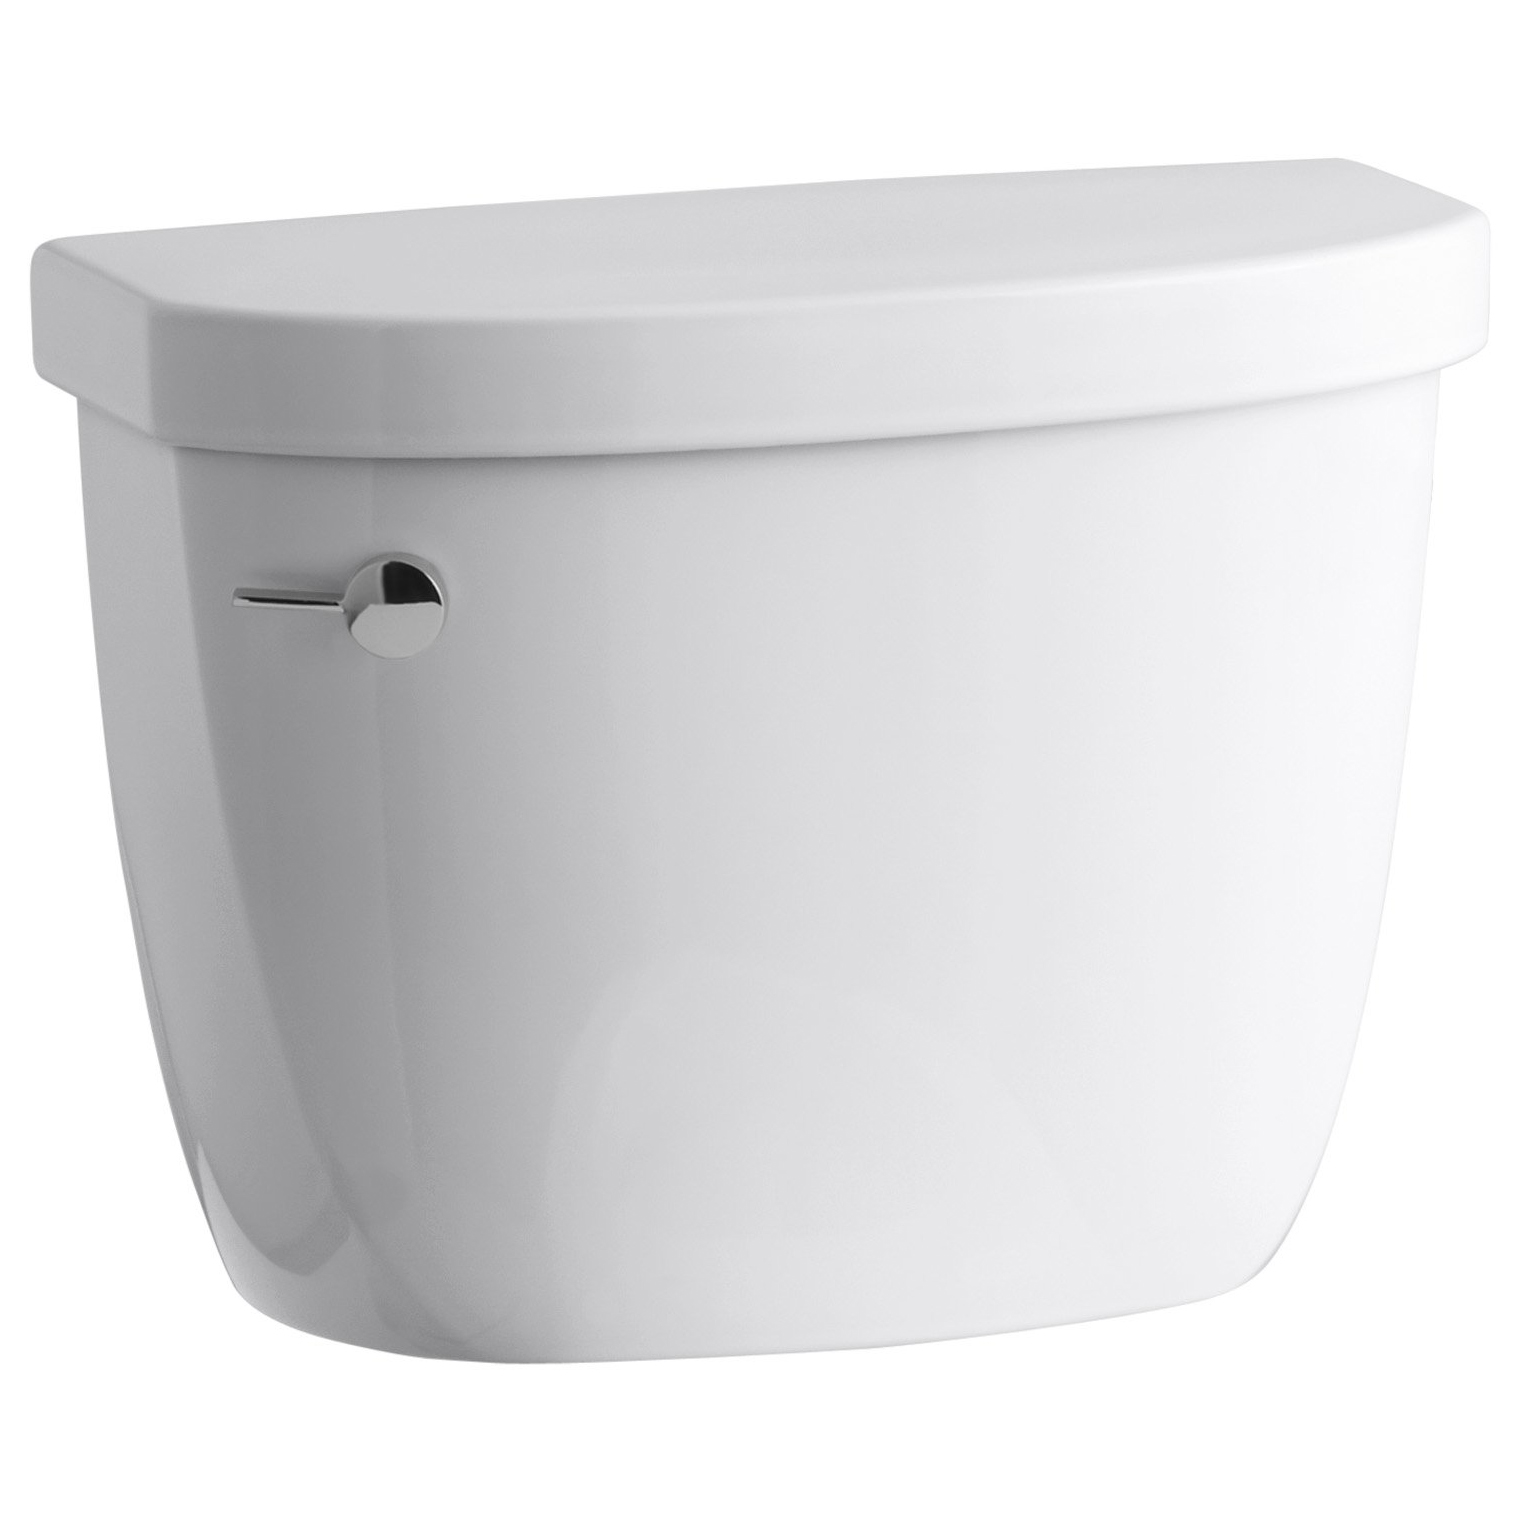 Cimarron 1.28 gpf Toilet Tank in White w/AquaPiston Flush Technology